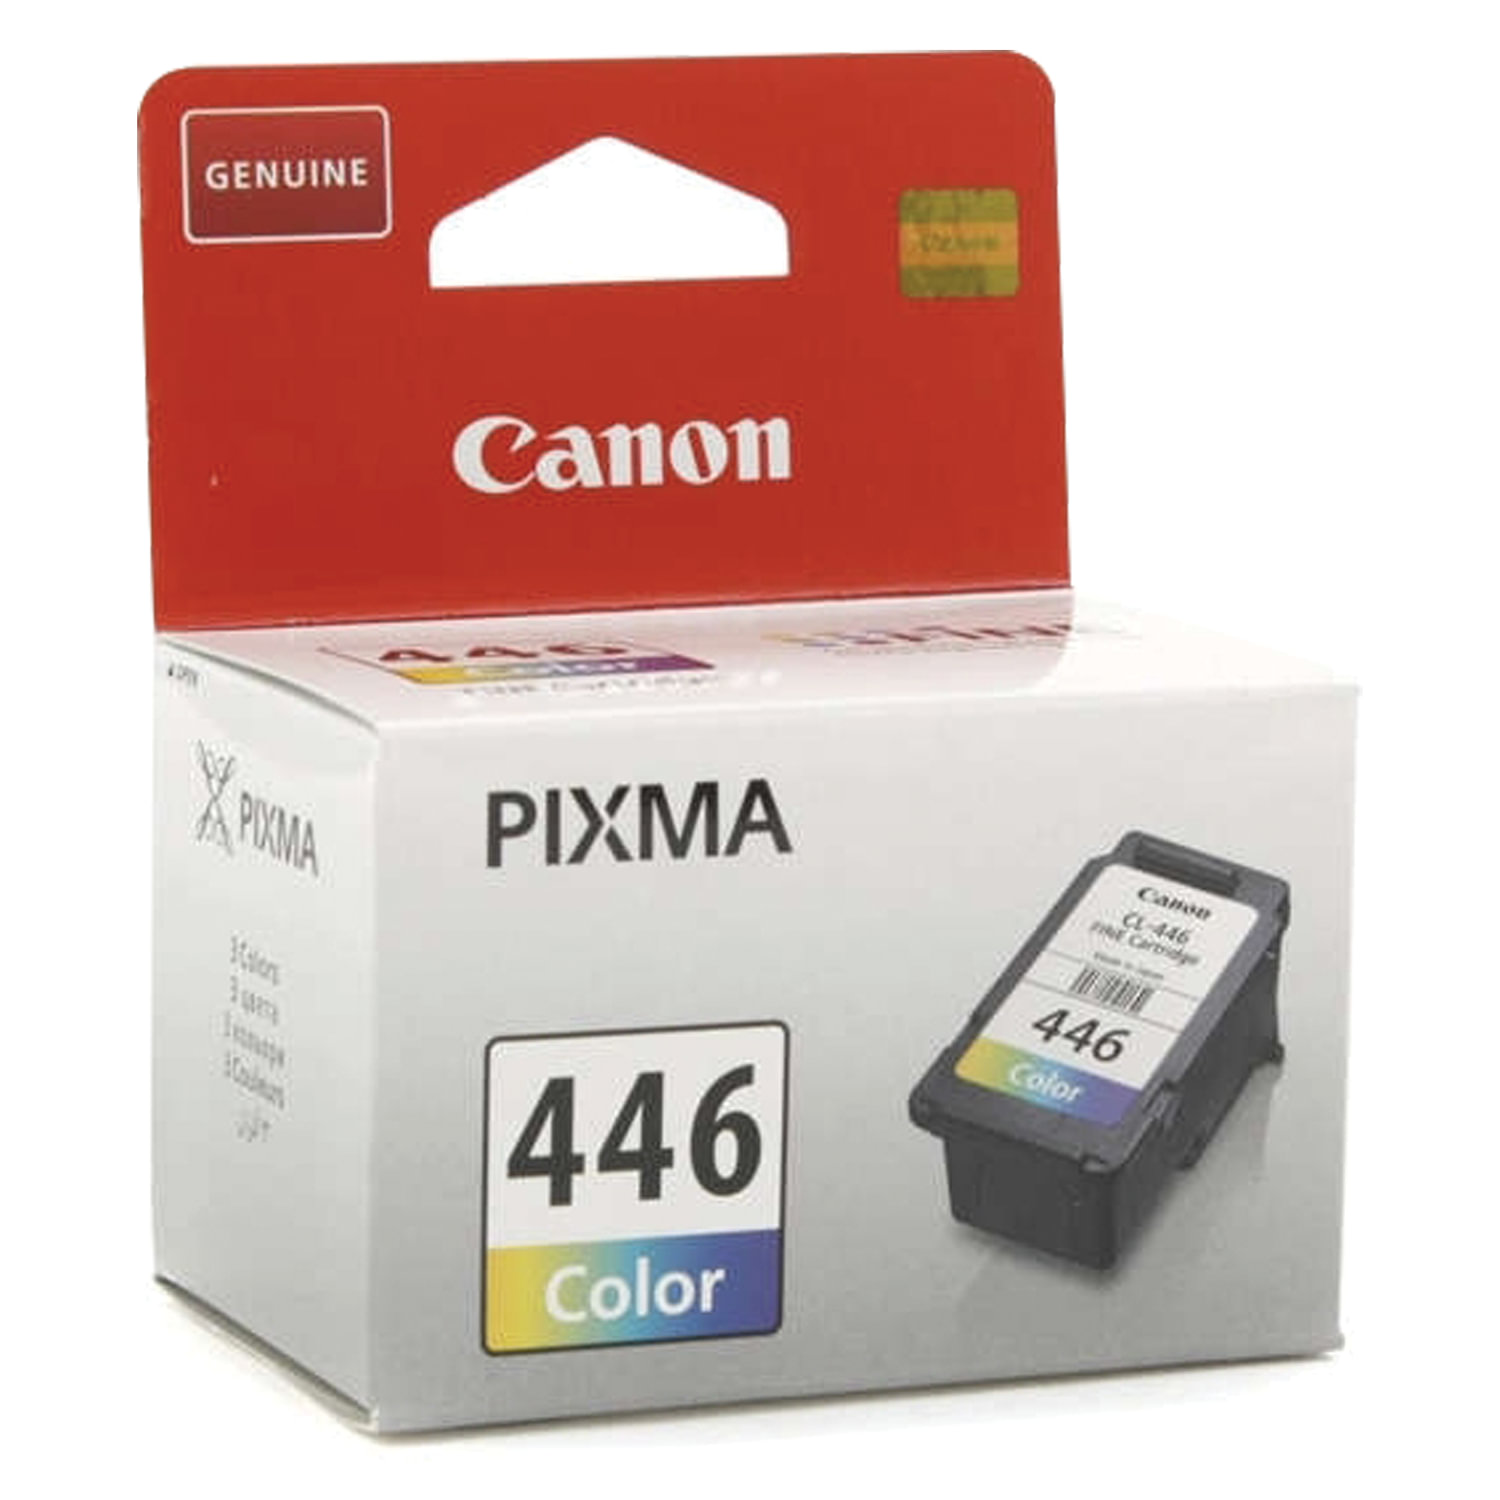 Где можно купить картридж для принтера. Картридж Canon PG-445xl черный. Canon CL-446. Canon картридж Canon PG-445. PG-445 (8283b001).